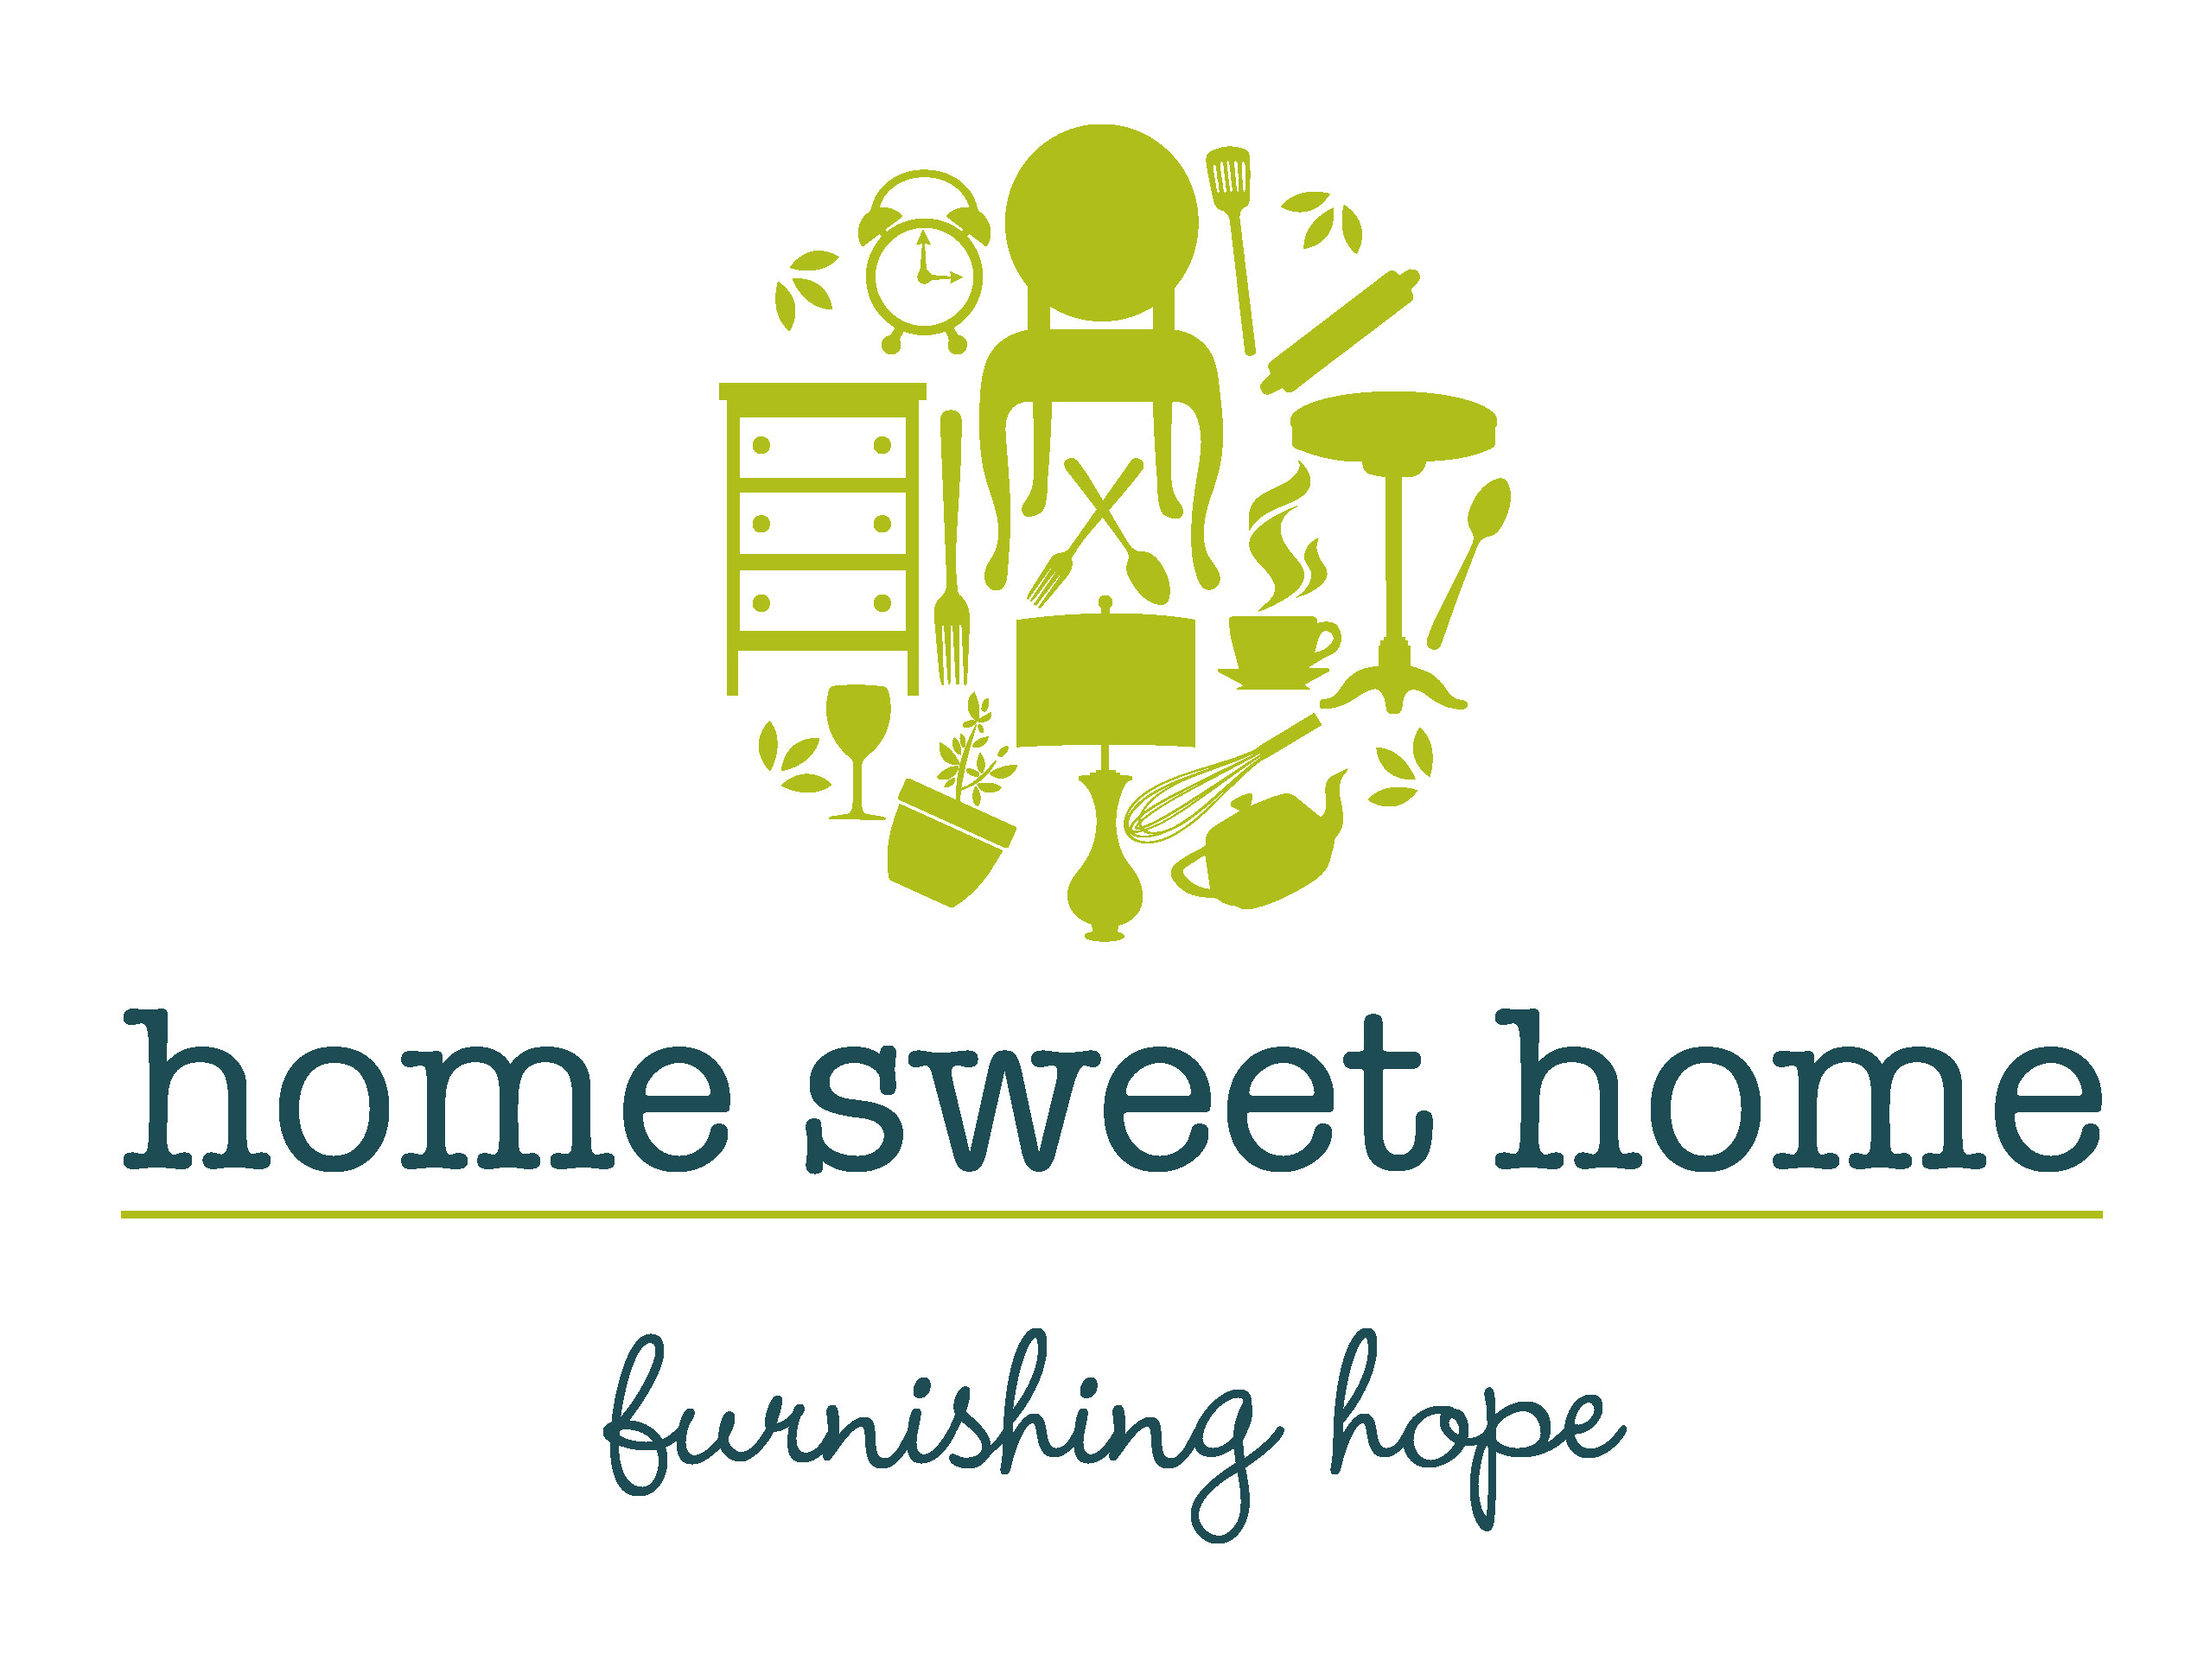 Home Sweet Home  furnishing hope